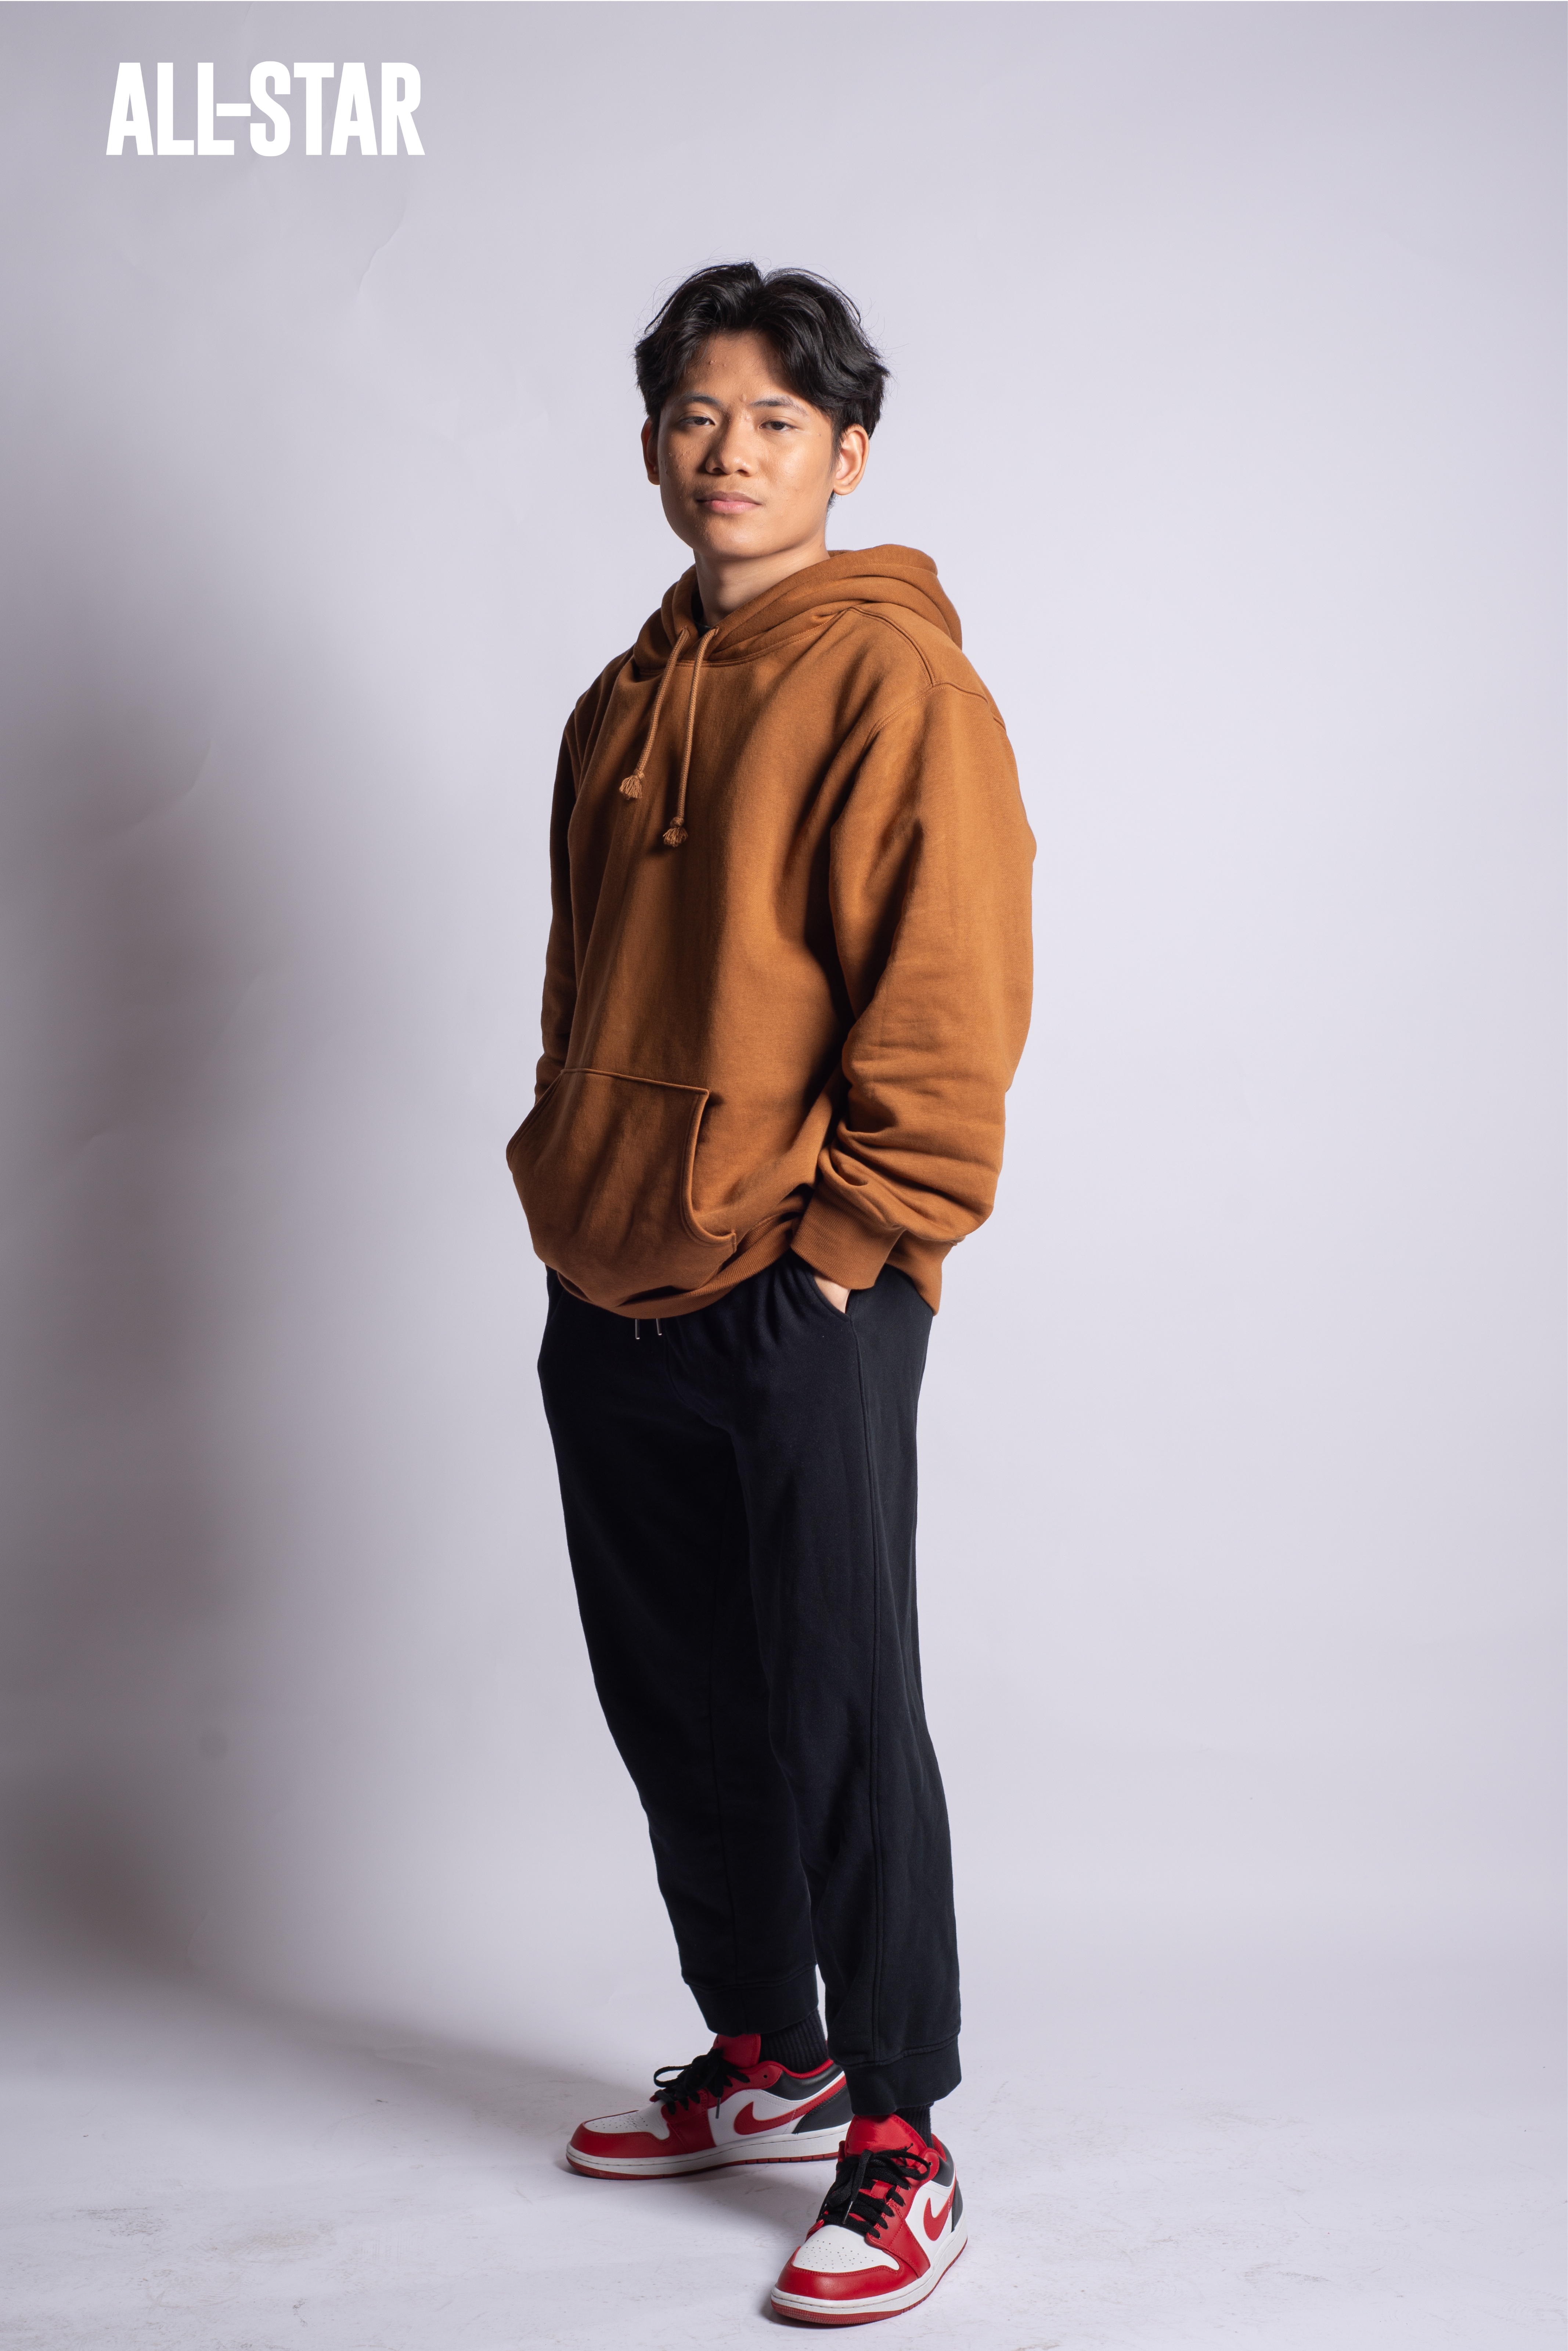 Filipino boy model wearing hoodie